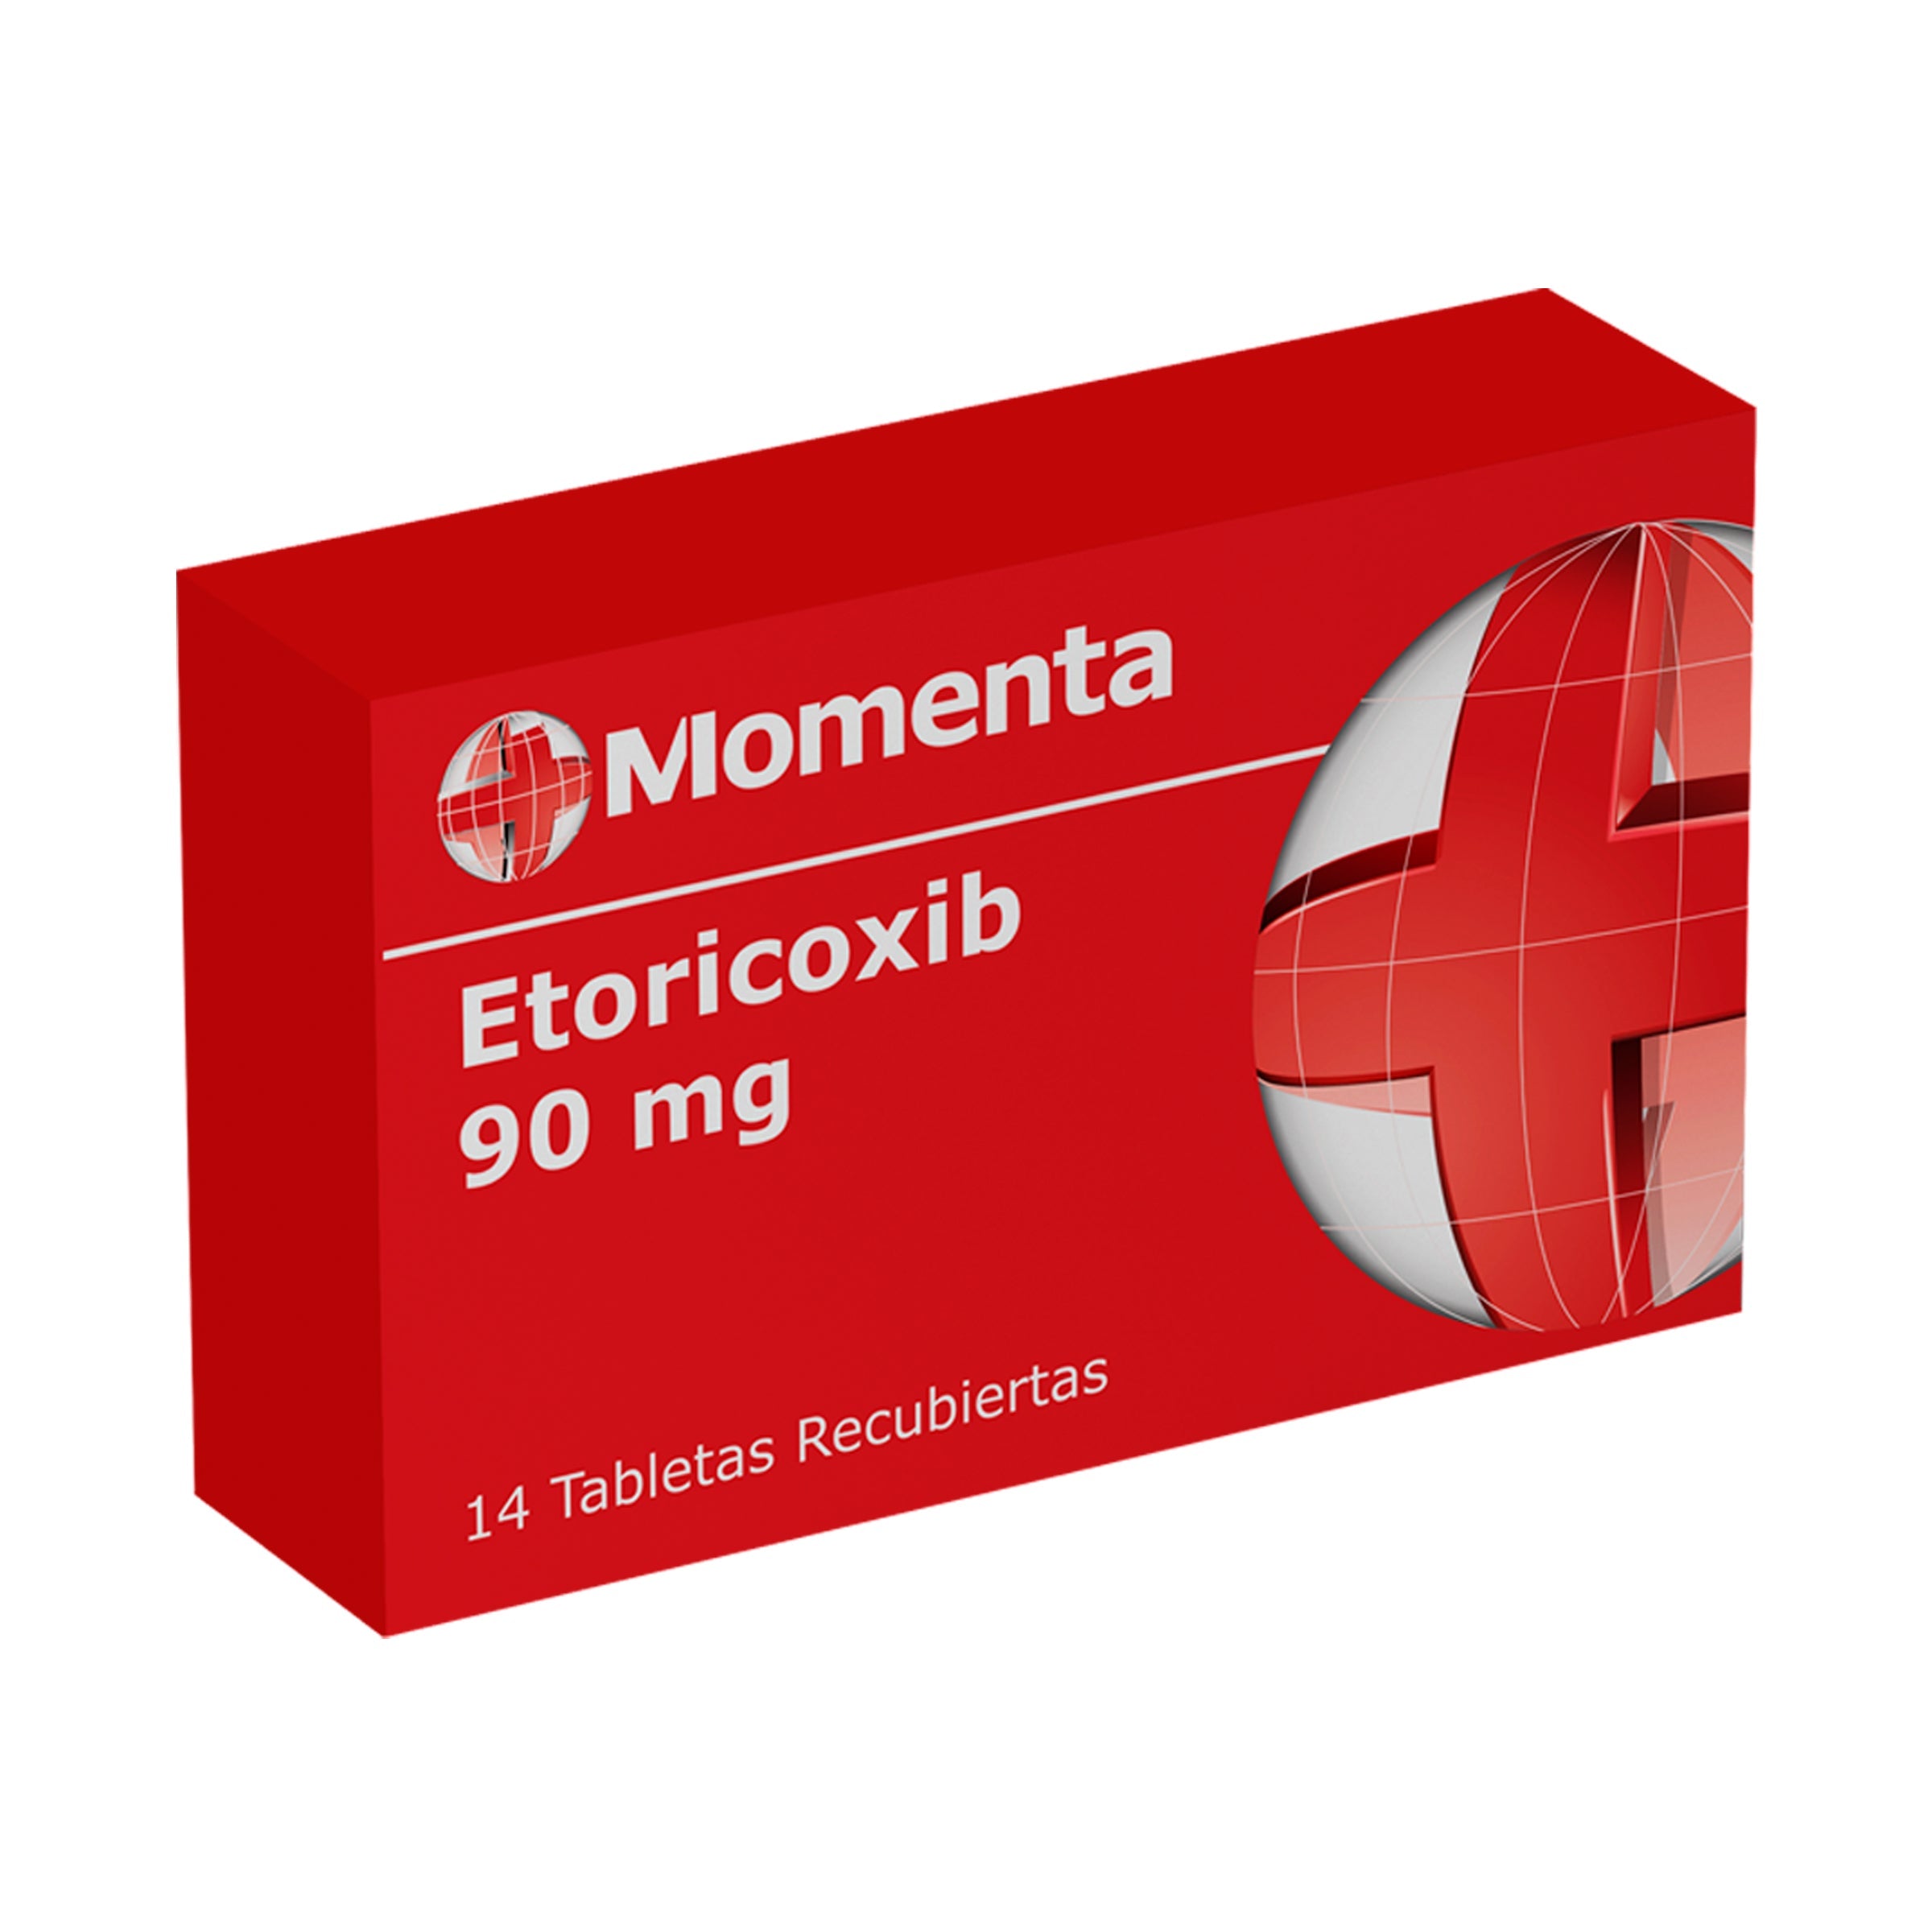 ETORICOXIB 90 MG 14 TABLETAS MO